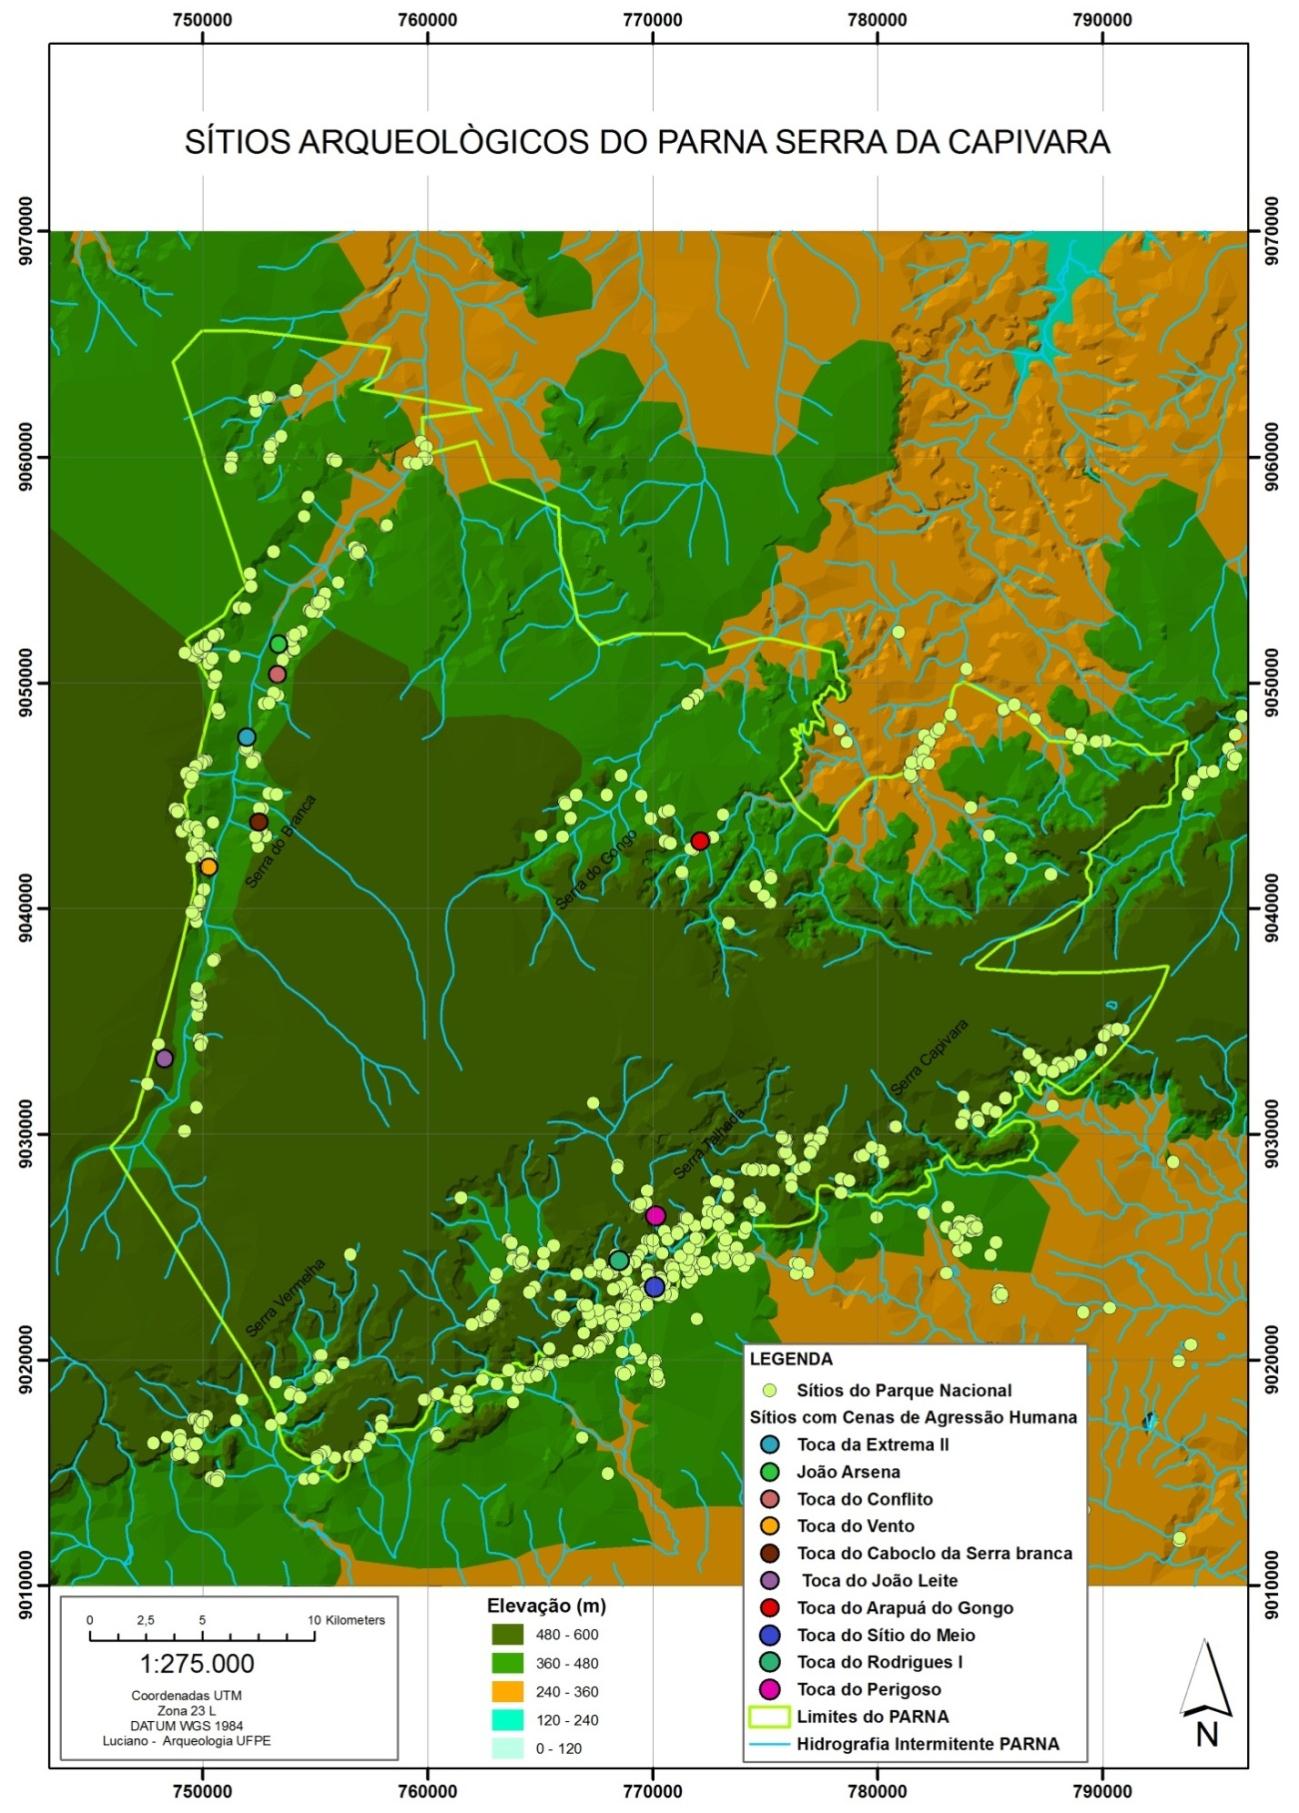 Figura 3: Mapa de distribuição das áreas com concentrações de Sítios Arqueológicos do Parque